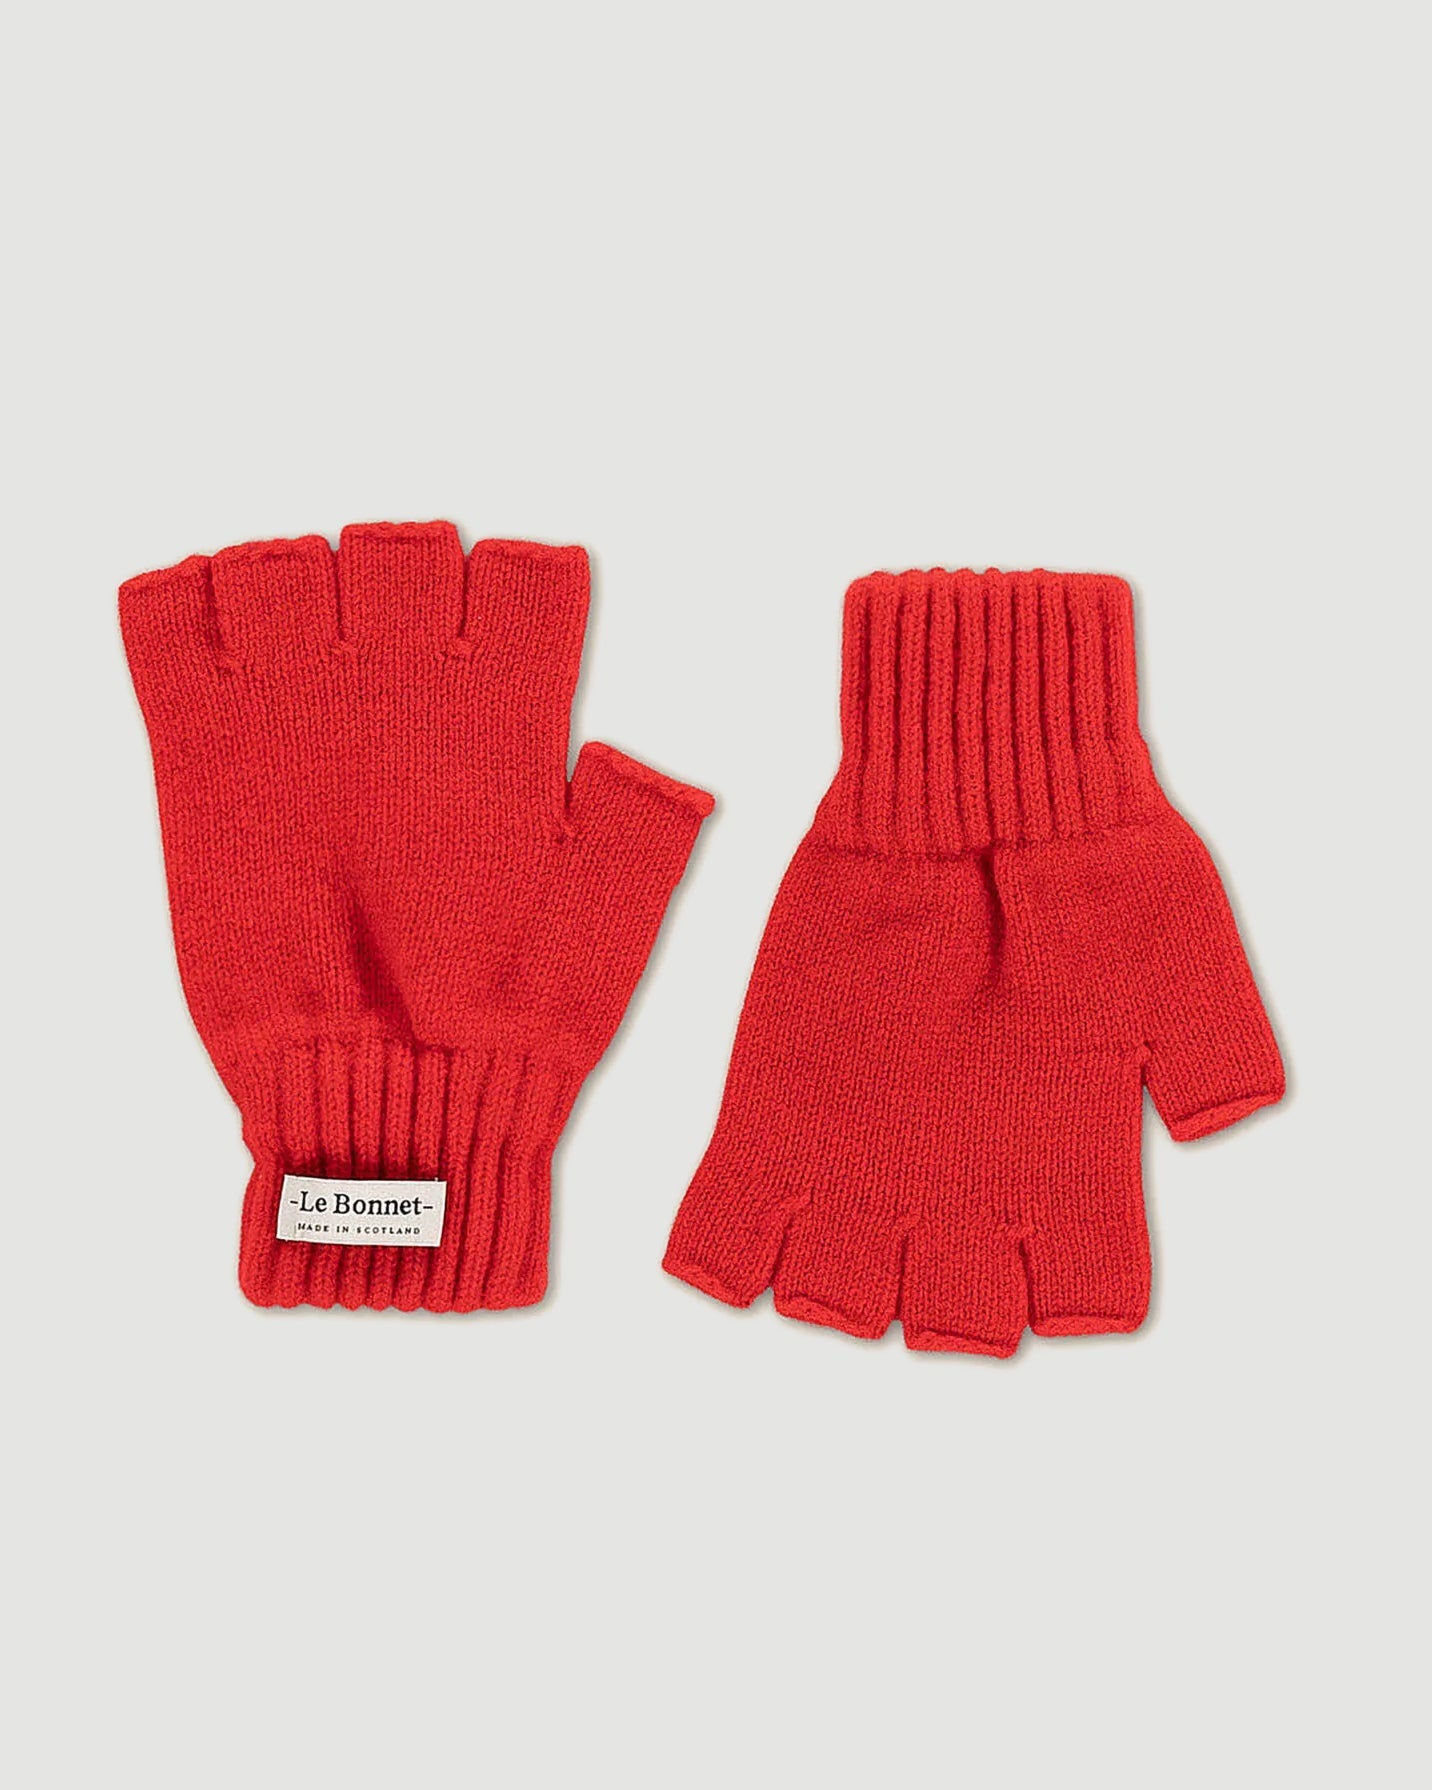 Le Bonnet Gloves Fingerless Crimson Gloves Men